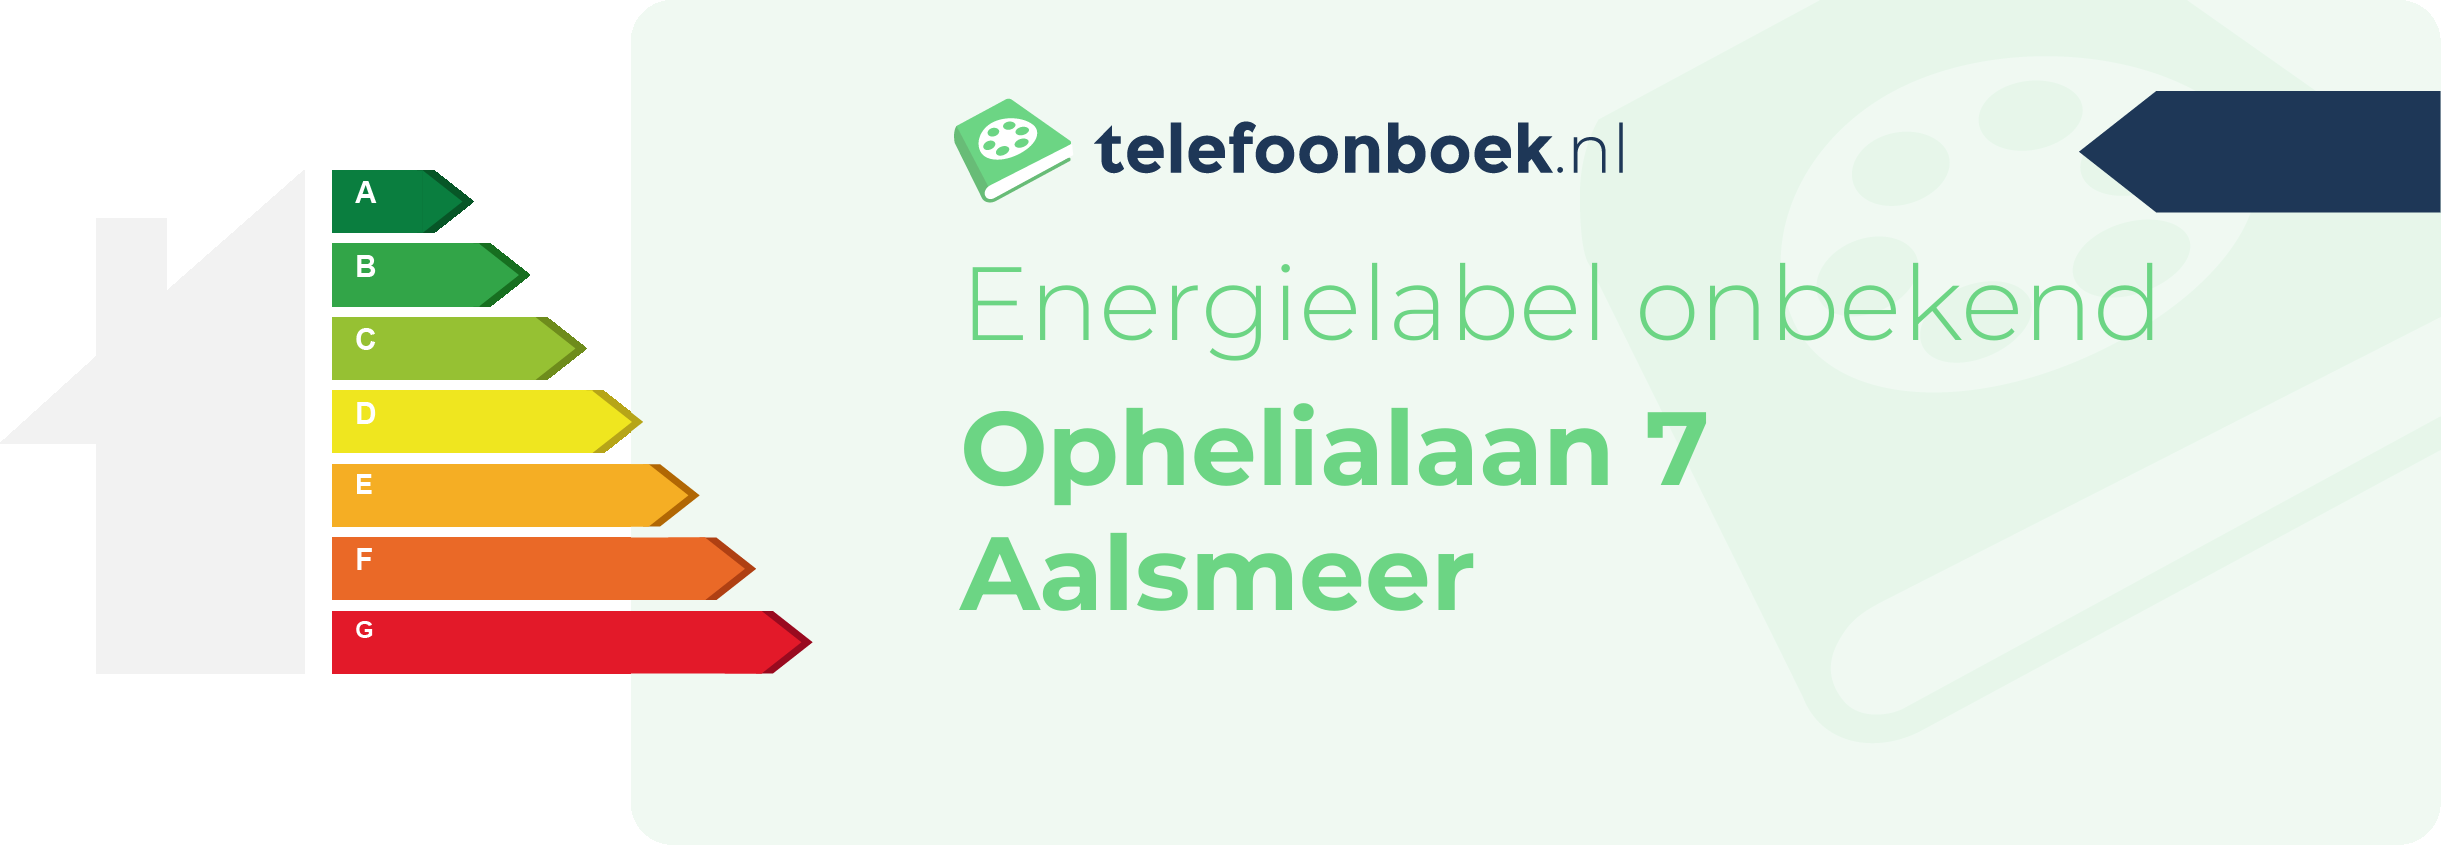 Energielabel Ophelialaan 7 Aalsmeer